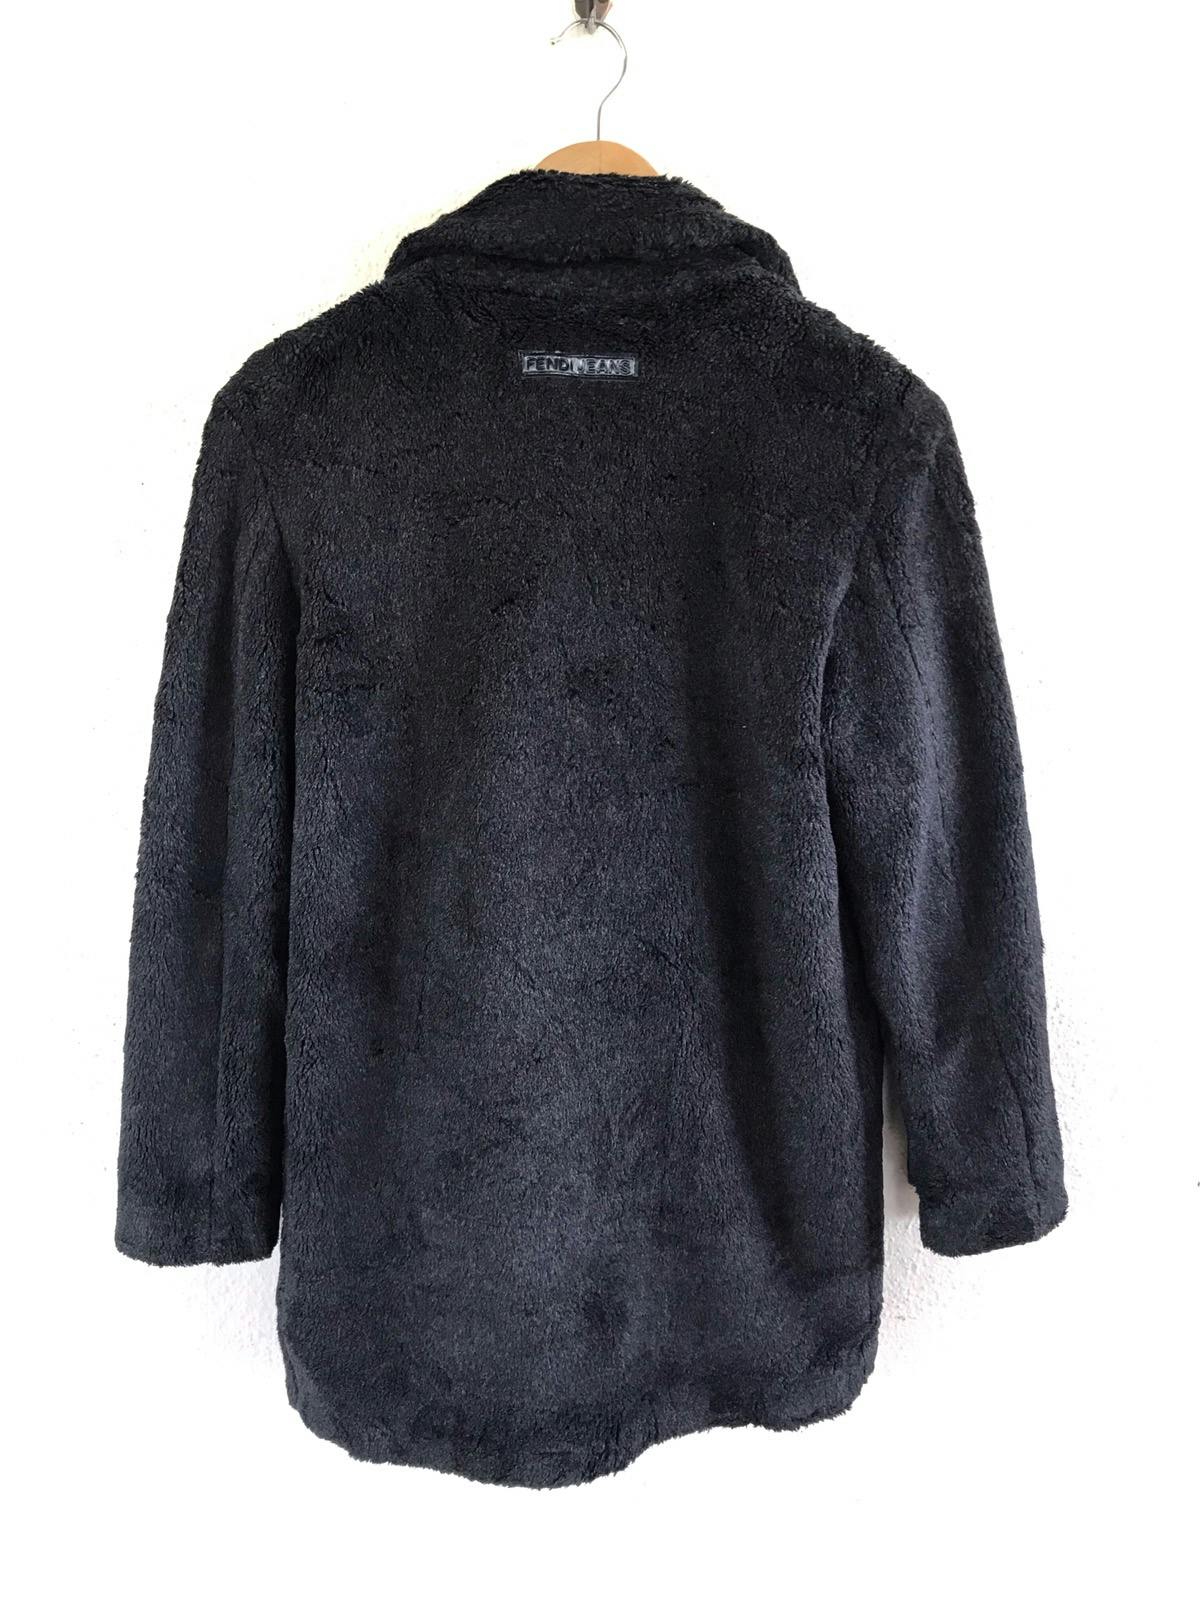 FENDI Jeans Boa Coat/ Fur Jacket Made in Italy - 8